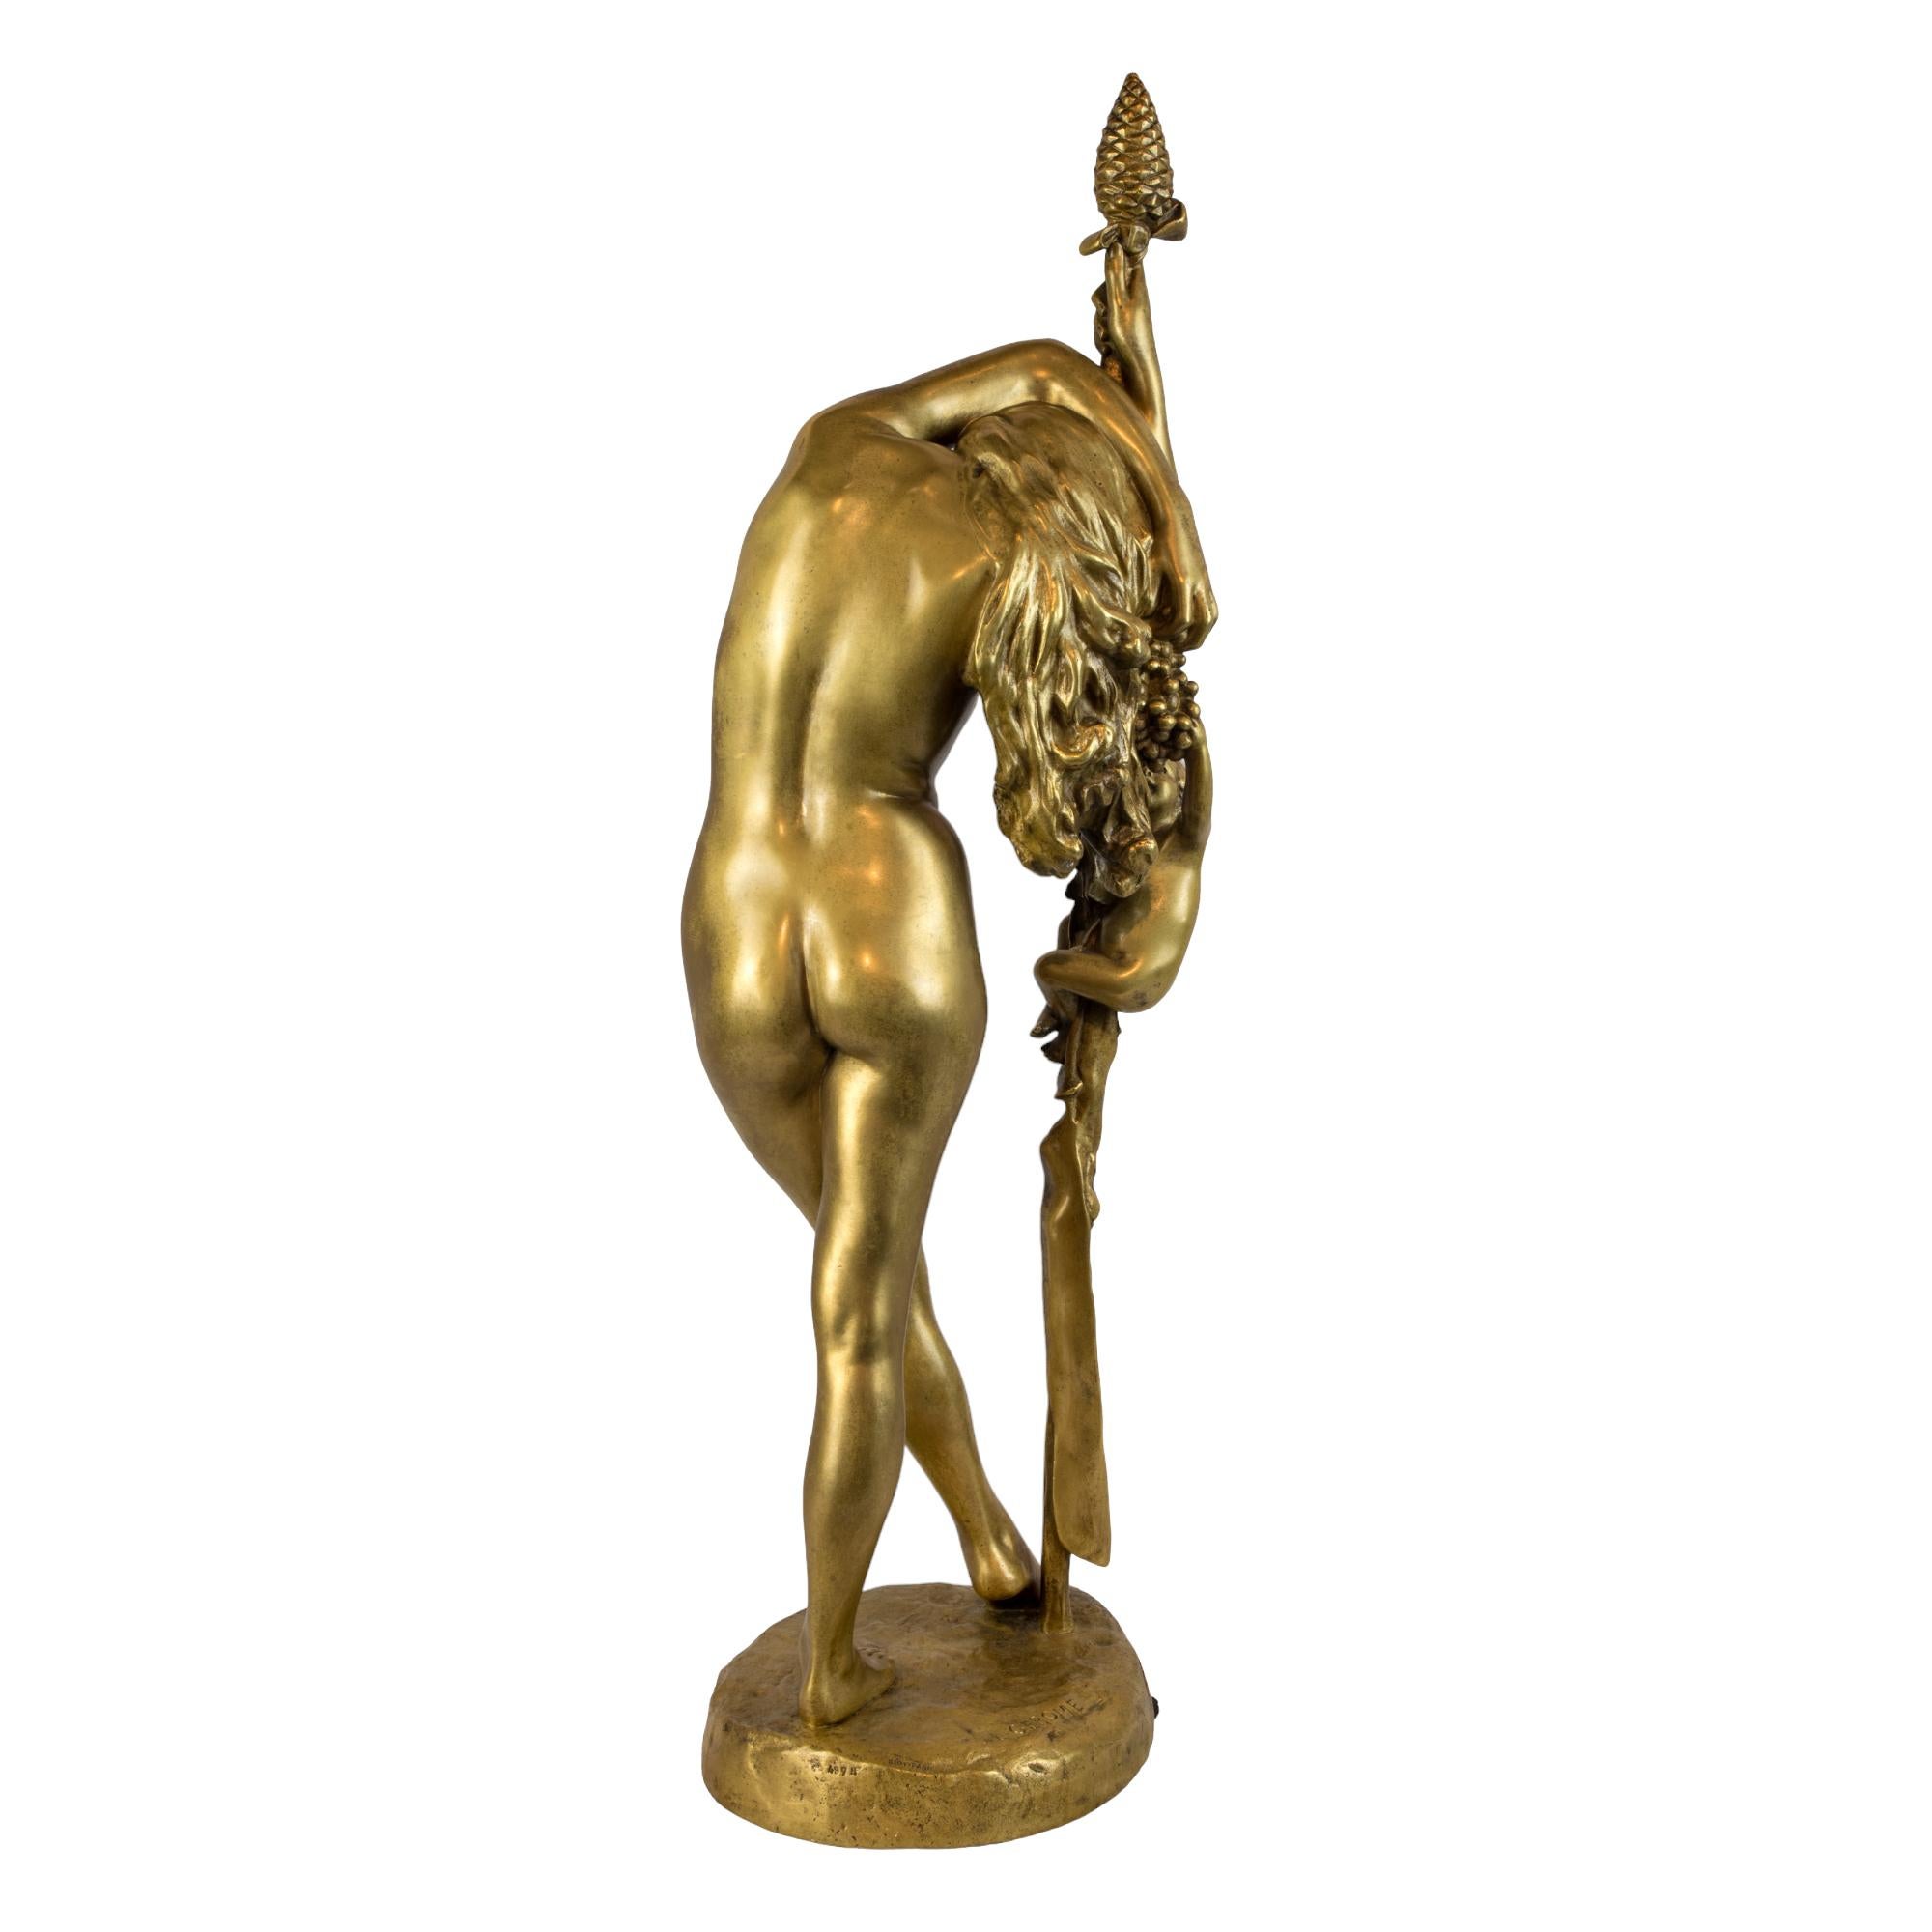 Feine Skulptur aus vergoldeter Bronze des 19. Jahrhunderts von JEAN-LEON GEROME

Titel: L'Extase Bacchique: Eine Allegorie des Überflusses und der Freude

Präsentation von 